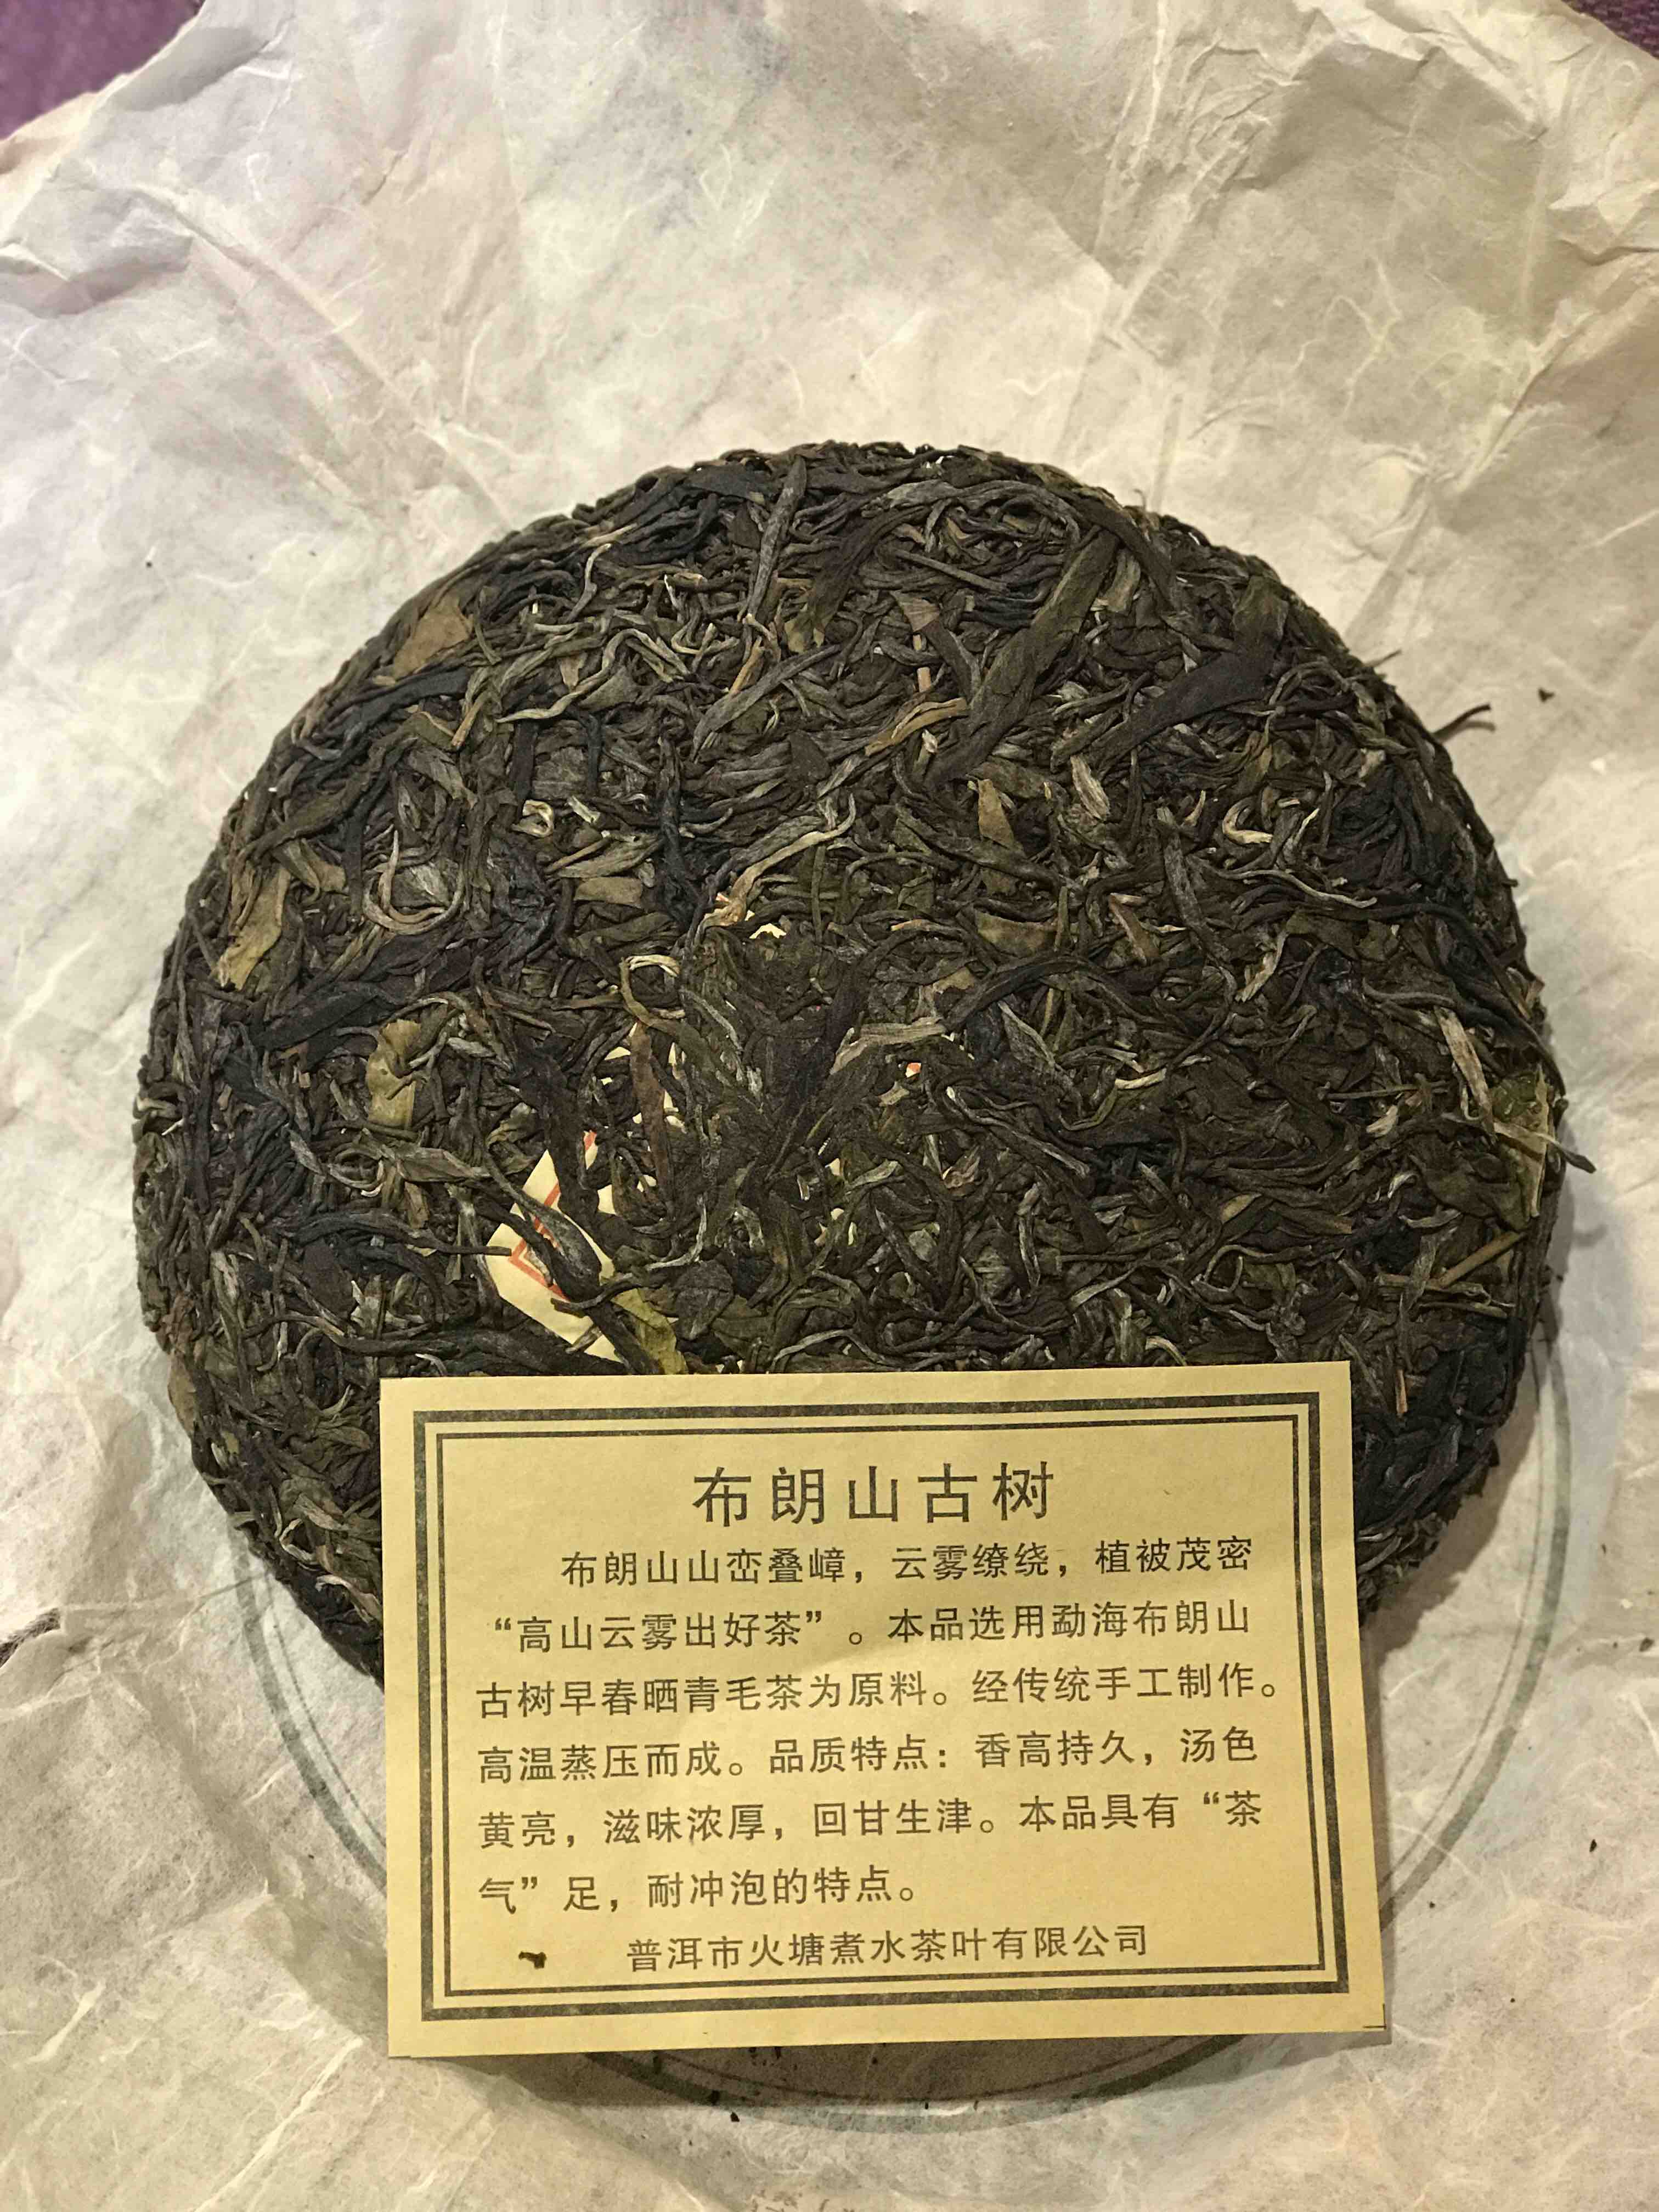 本品选用勐海布朗山古树早春晒青毛茶为原料,经传统手工制作而成.